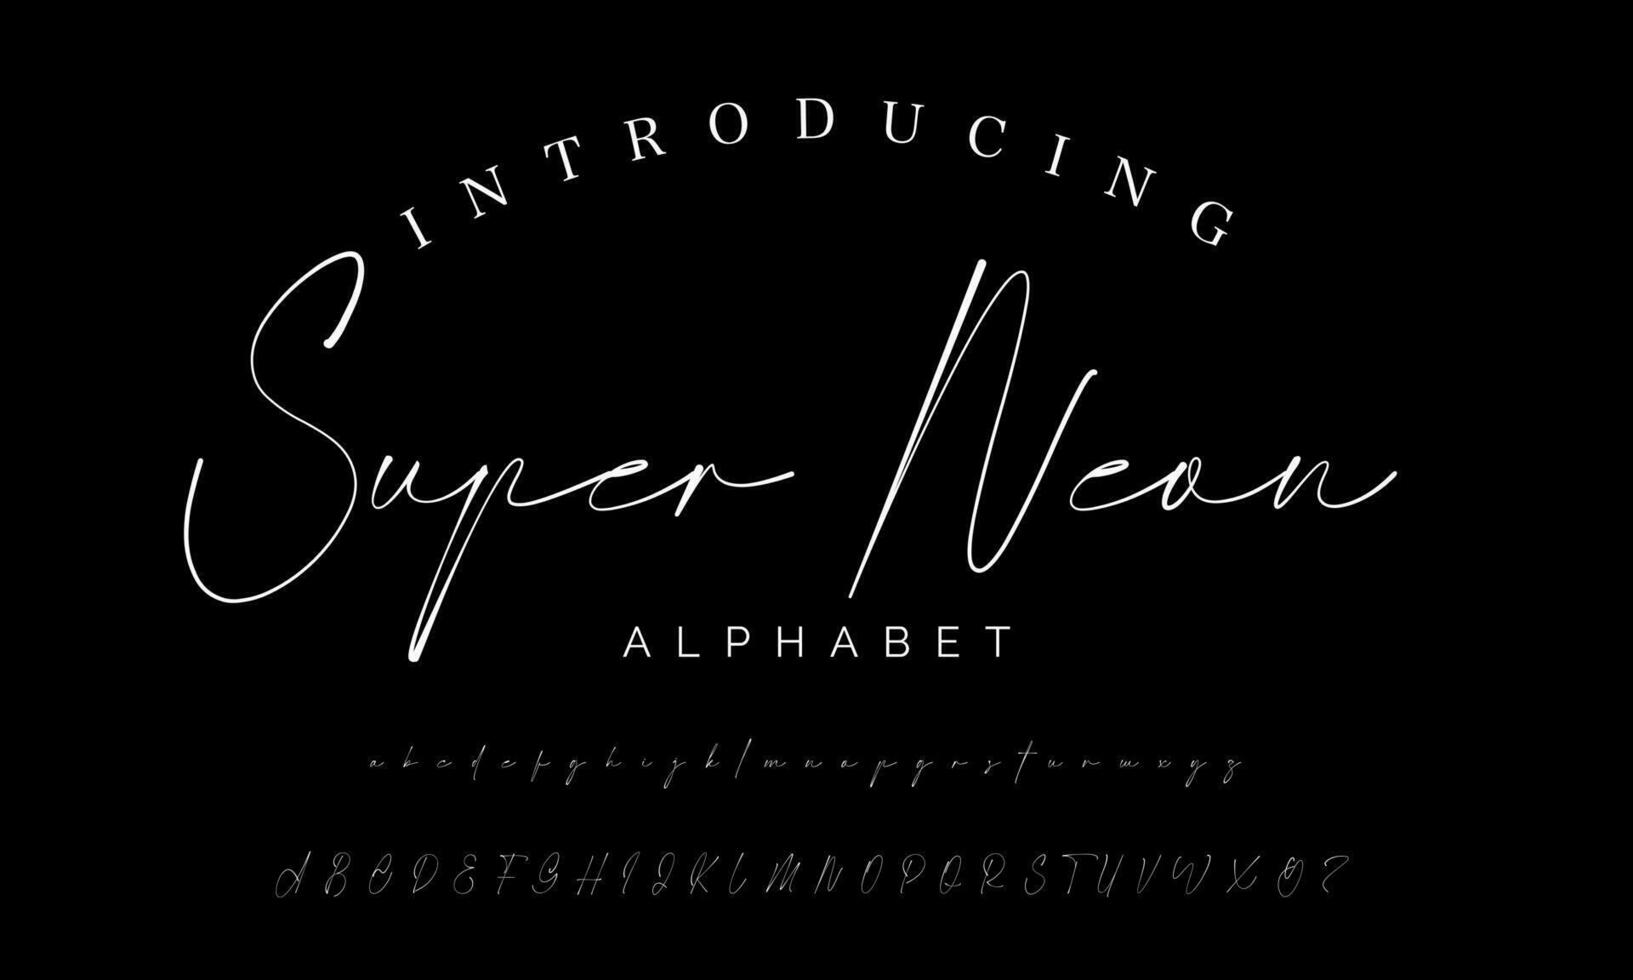 migliore alfabeto il canto degli uccelli sorprendente copione firma logotipo font lettering manoscritto vettore